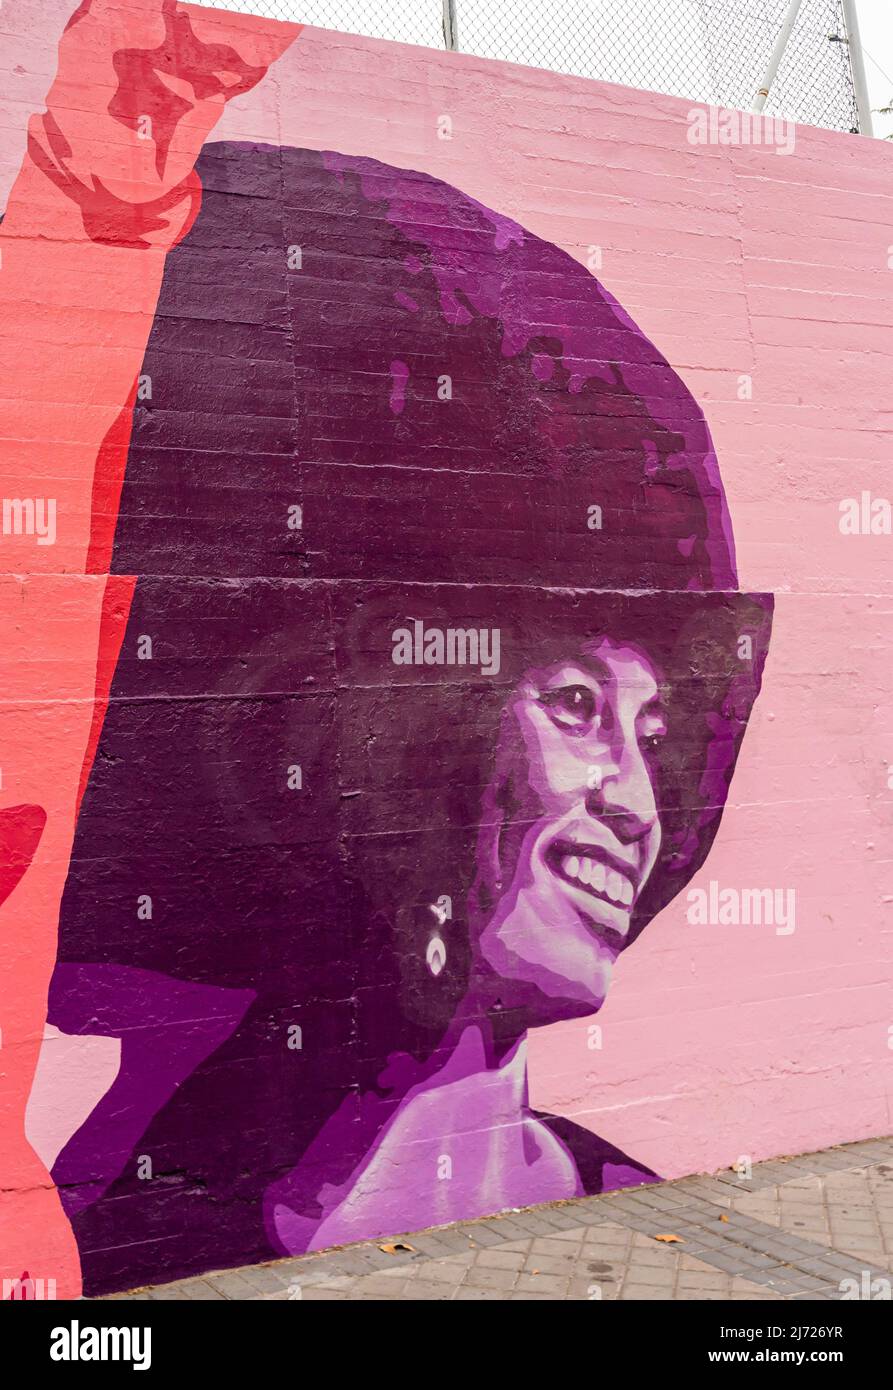 Wandgemälde der afroamerikanischen Politikerin und Aktivistin Angela Davis, Concepcion Feministische Wandmalerei La Unión hace la fuerza, an der Wand in, Madrid Spanien Stockfoto